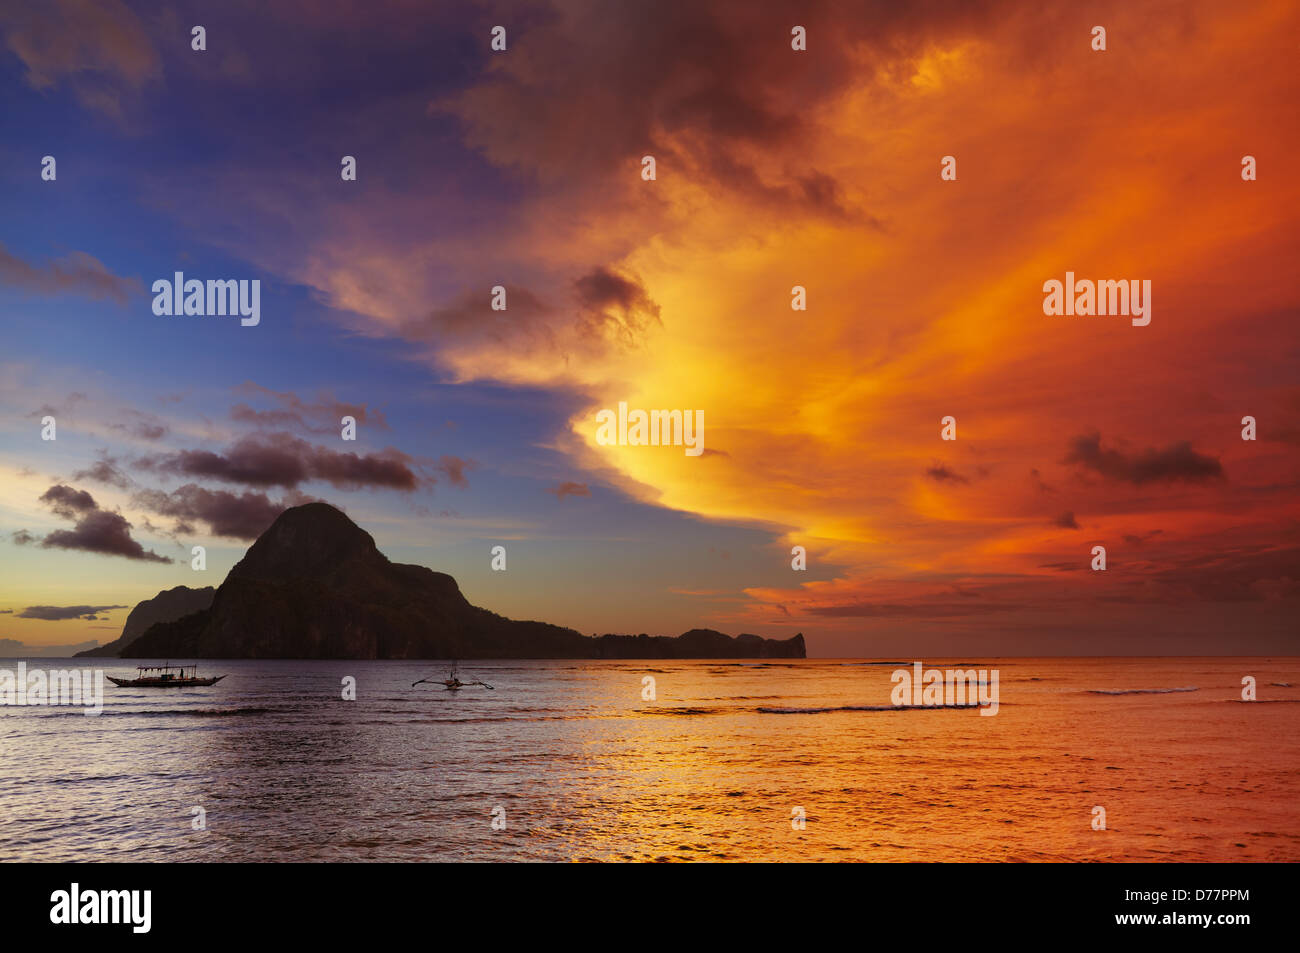 El Nido bay and Cadlao island at sunset, Palawan, Philippines Stock Photo